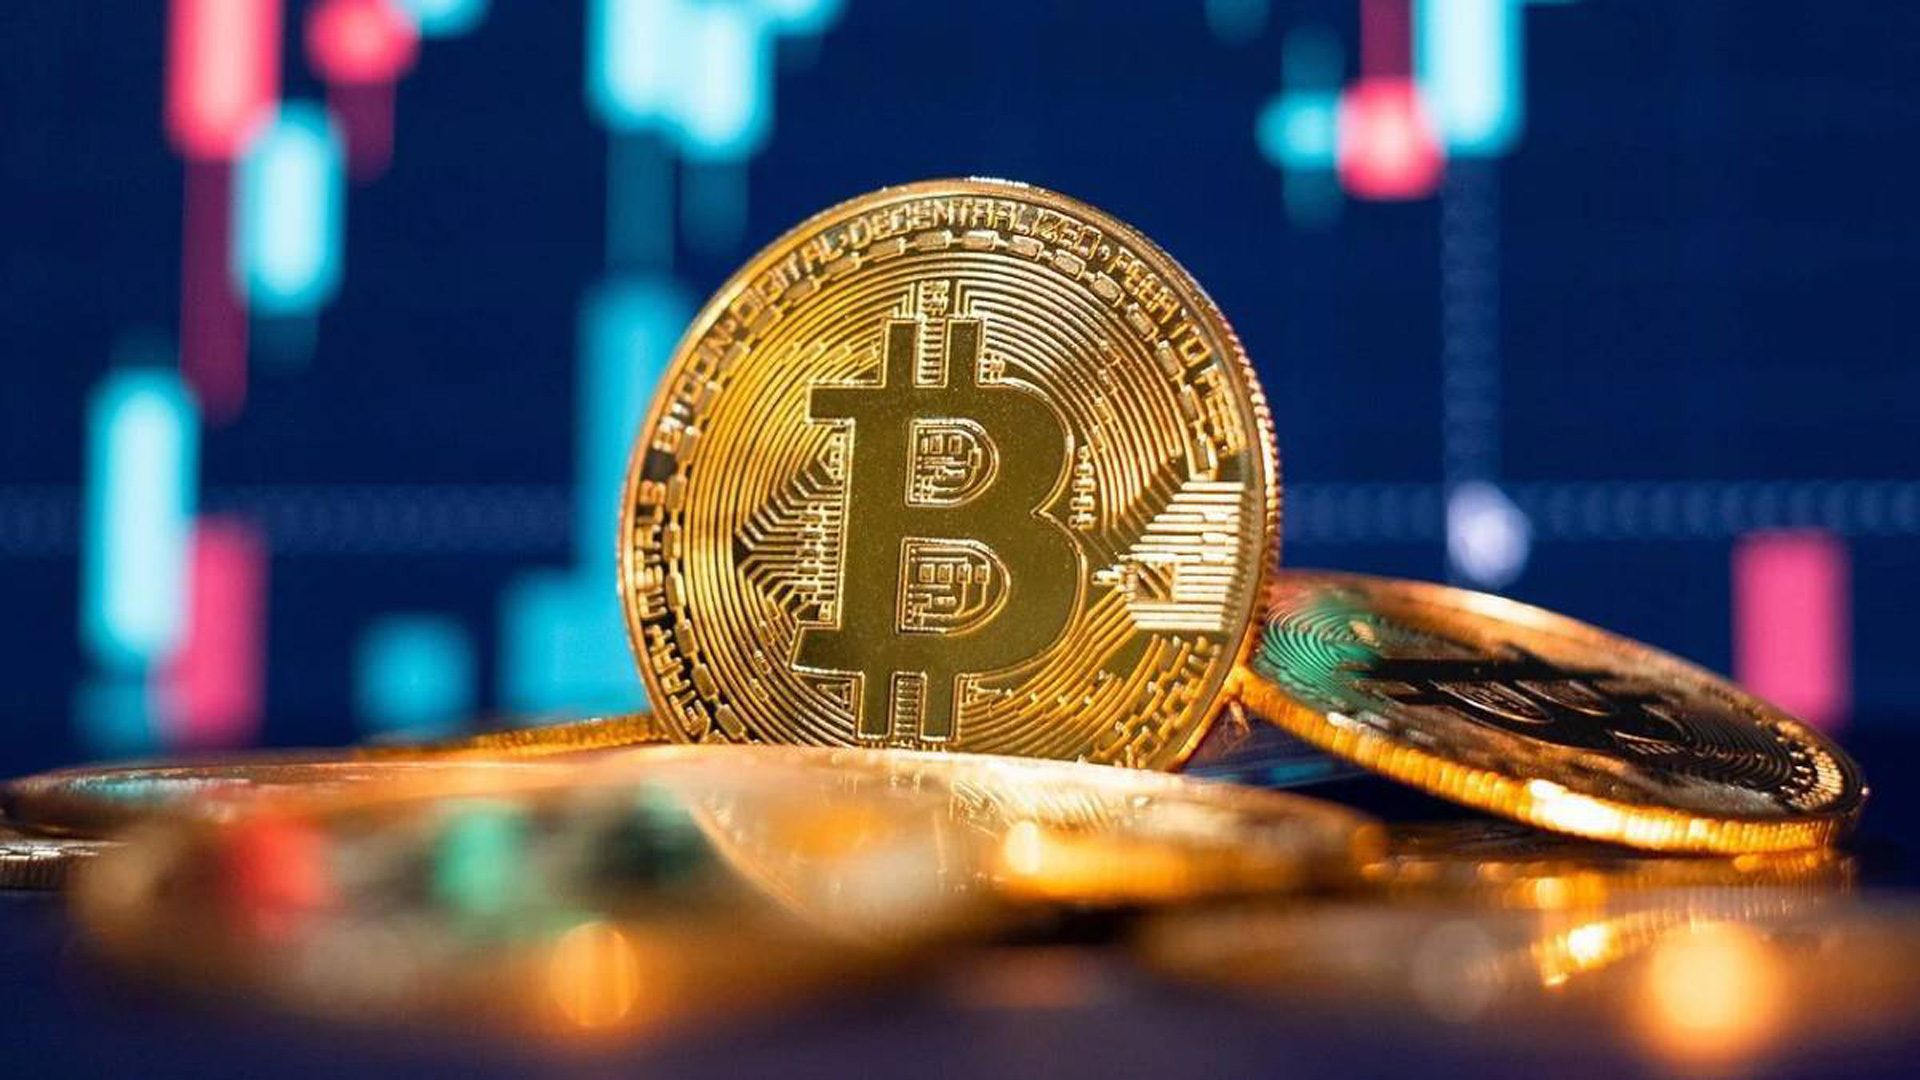 Dlaczego Bitcoin się zawiesza?